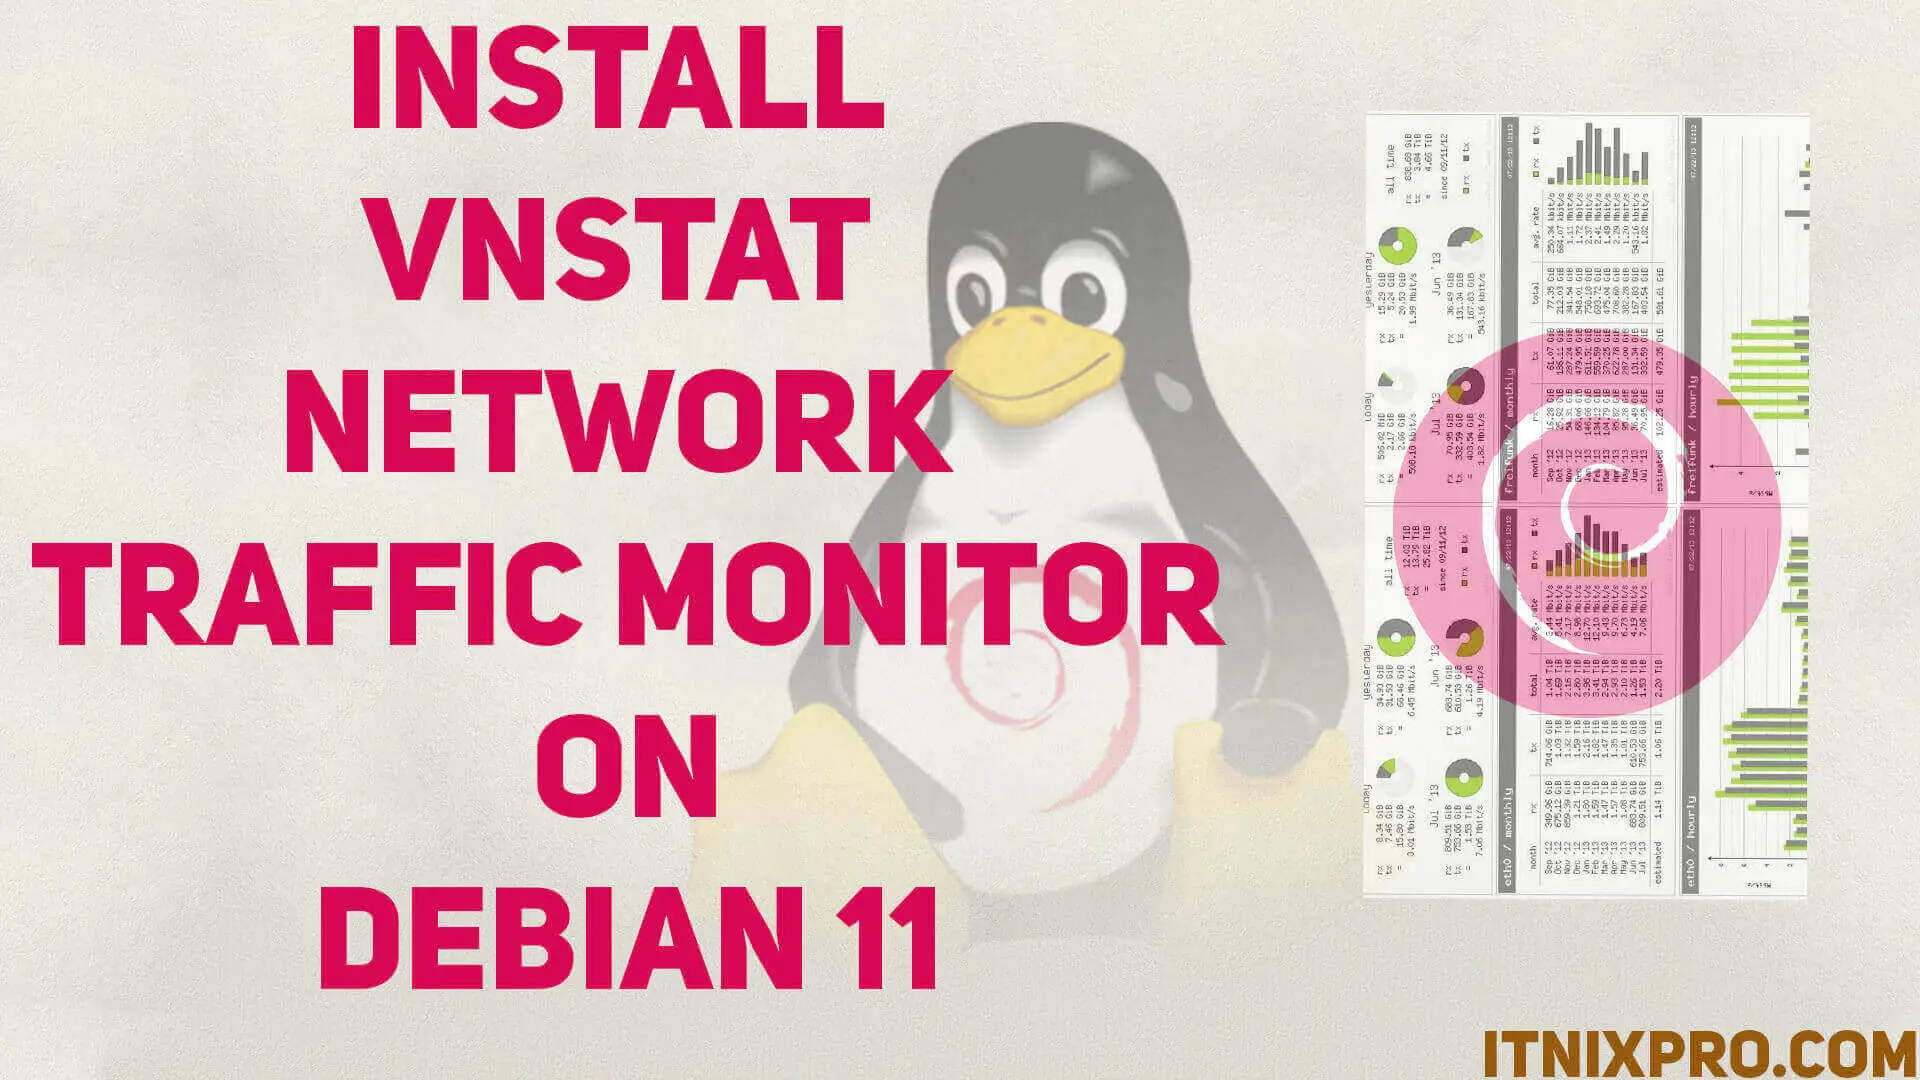 Install vnStat network traffic monitor on Debian 11